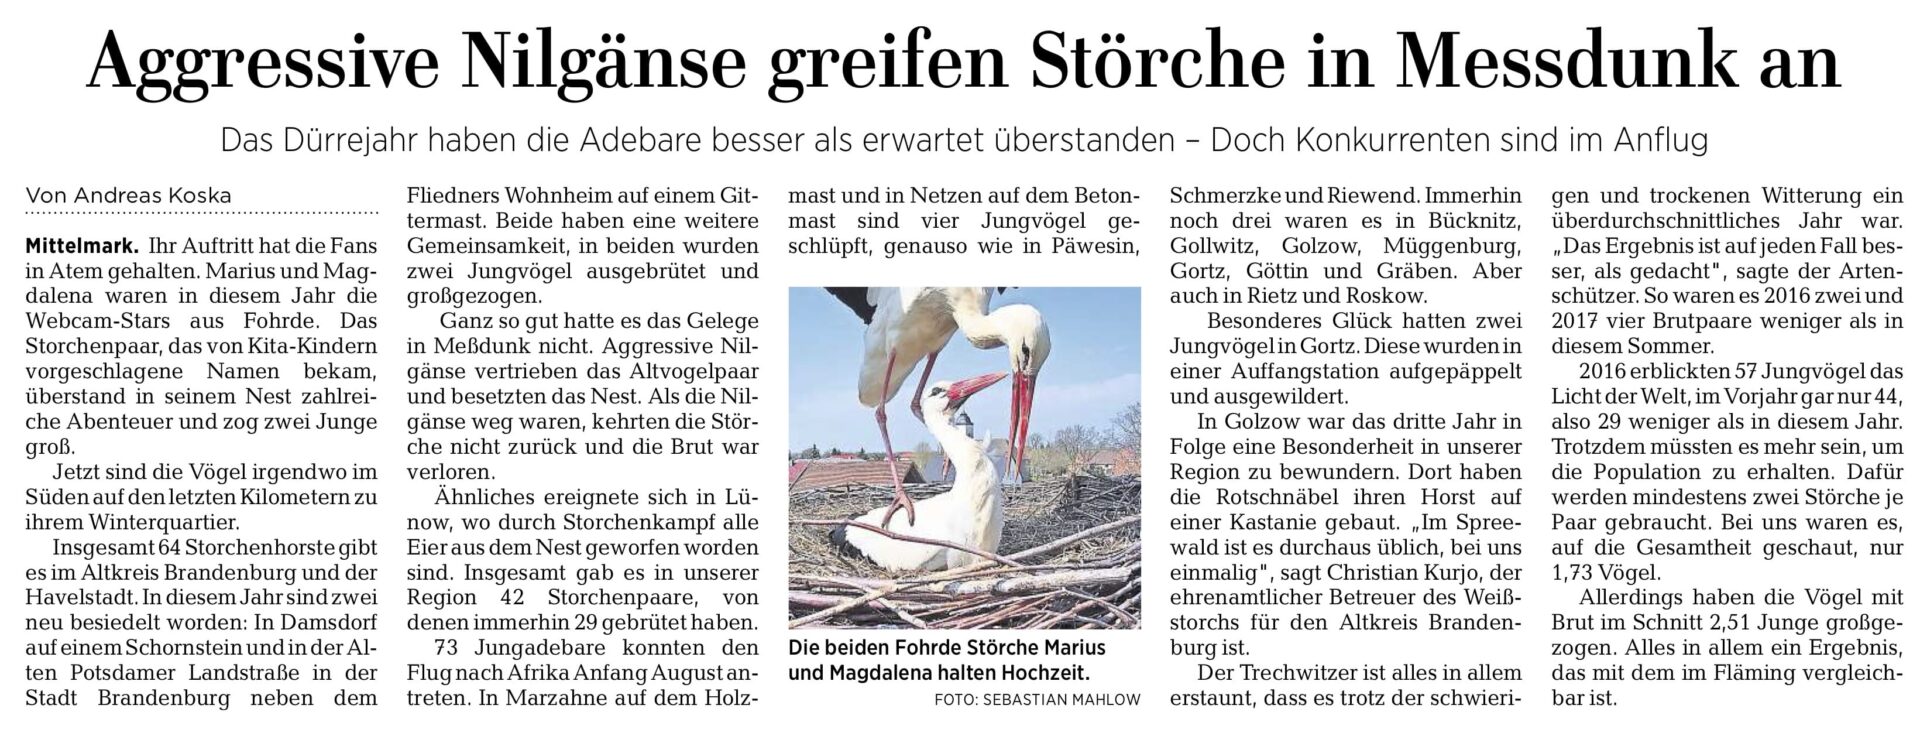 MAZ – Bericht über den Storchenbestand im Altkreis Brandenburg